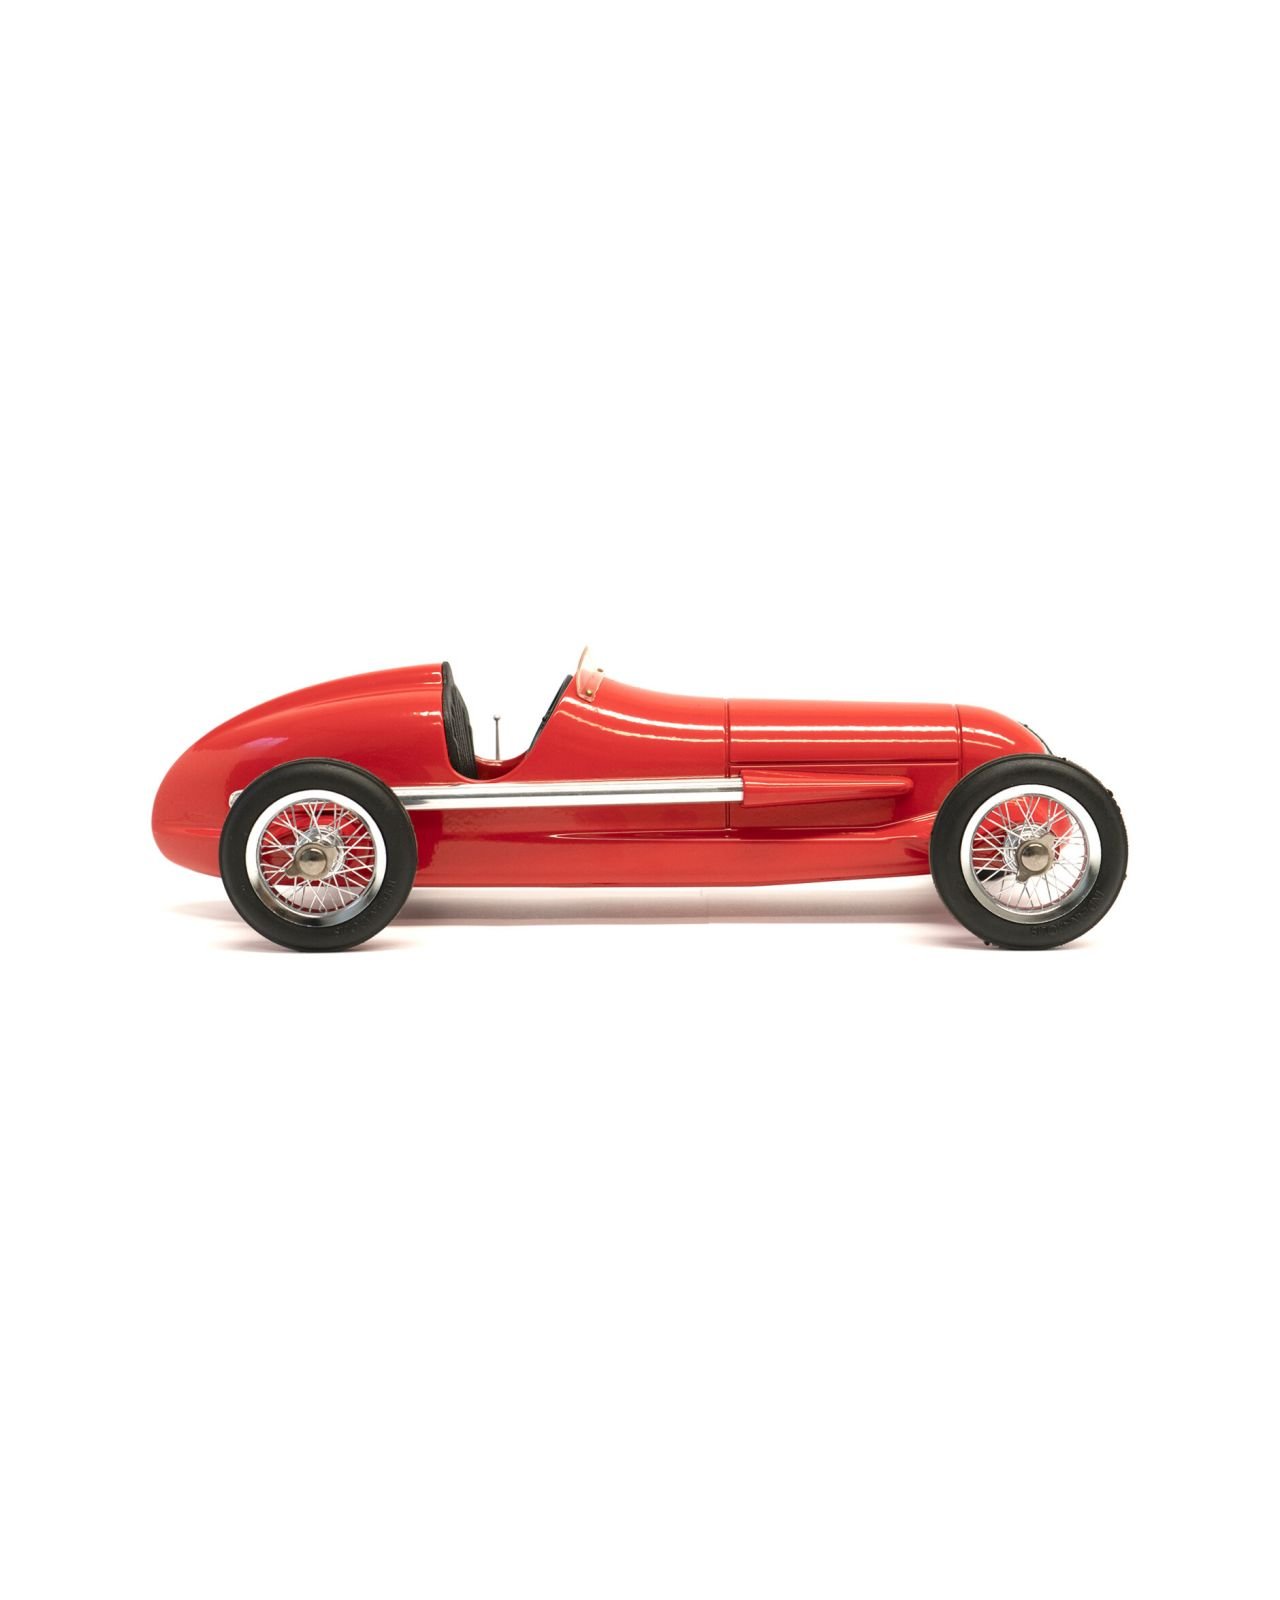 Racer model car red